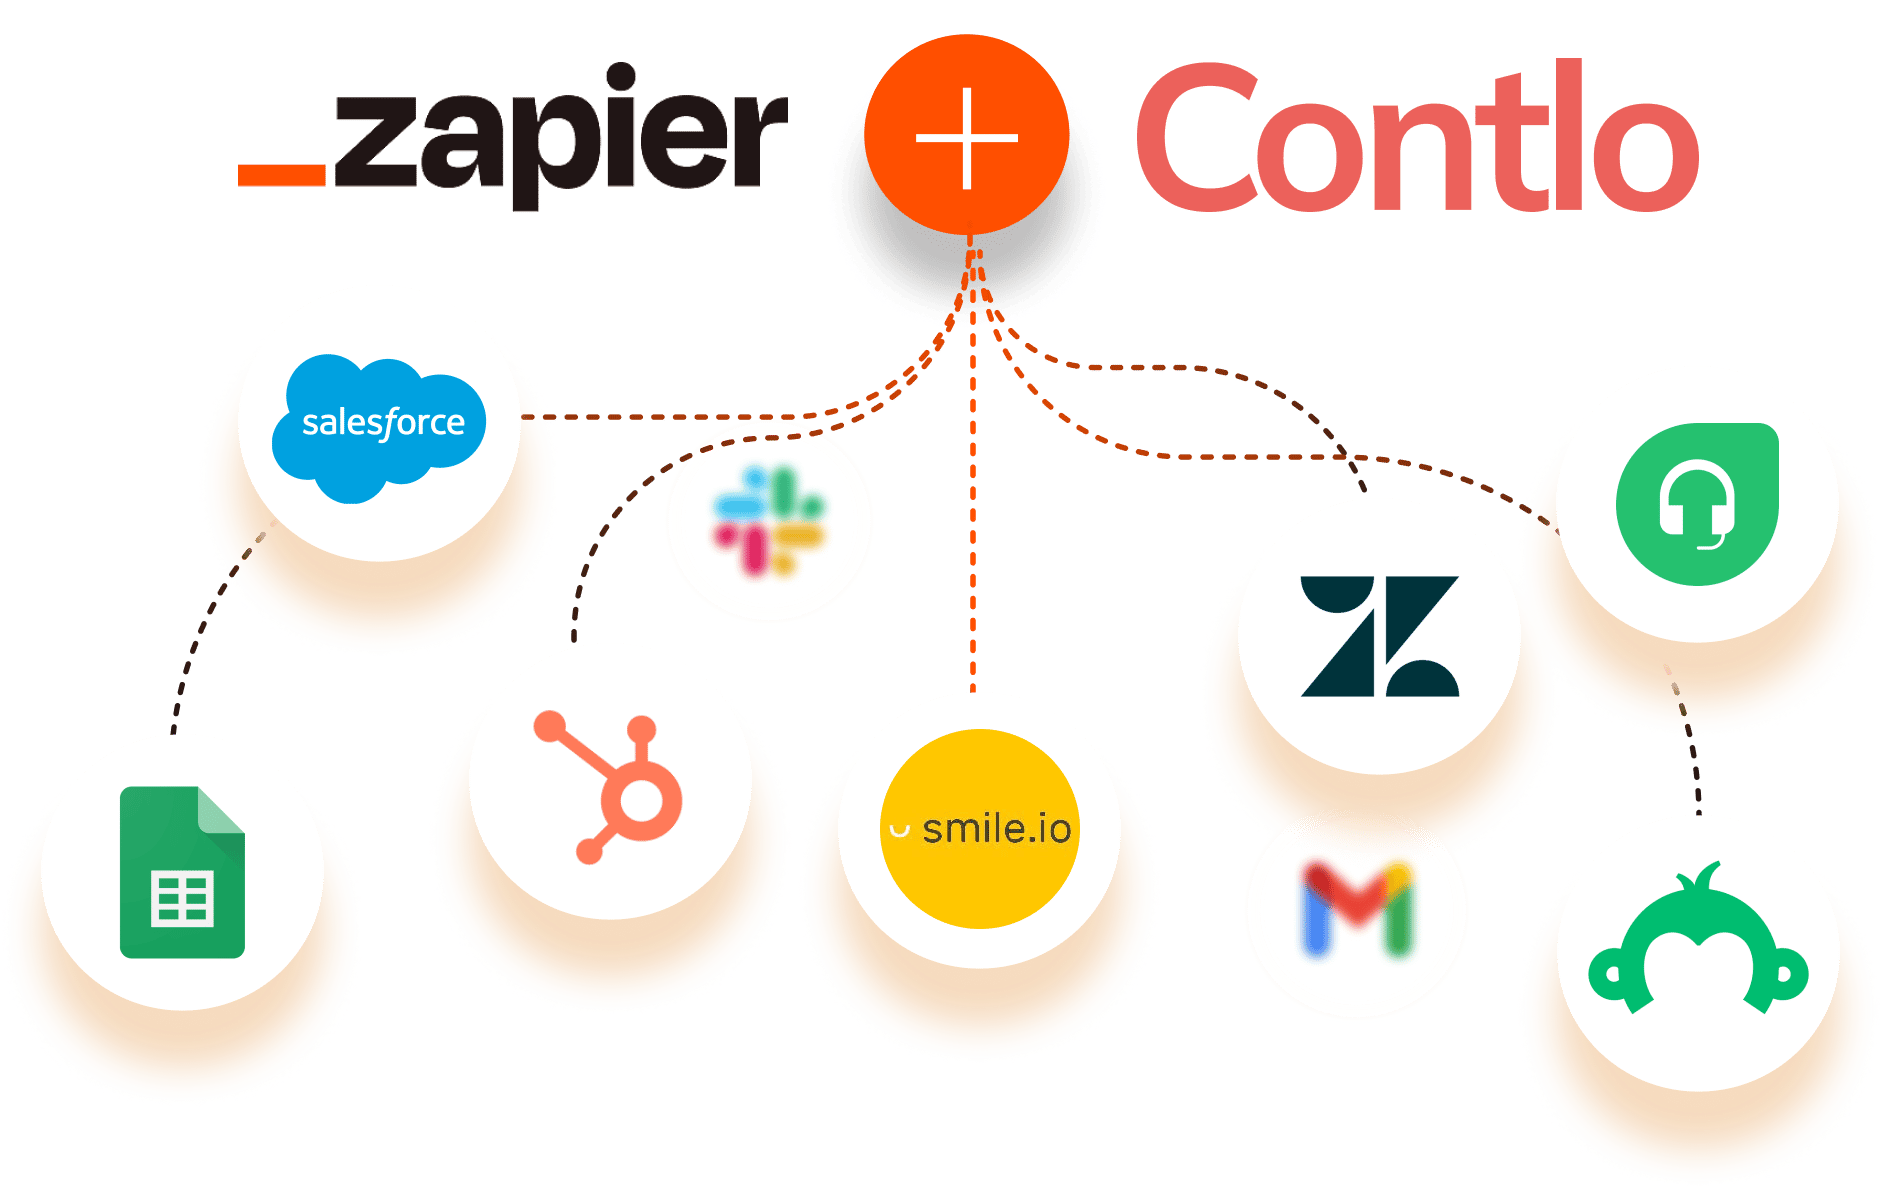 Introducing Contlo + Zapier integration ????